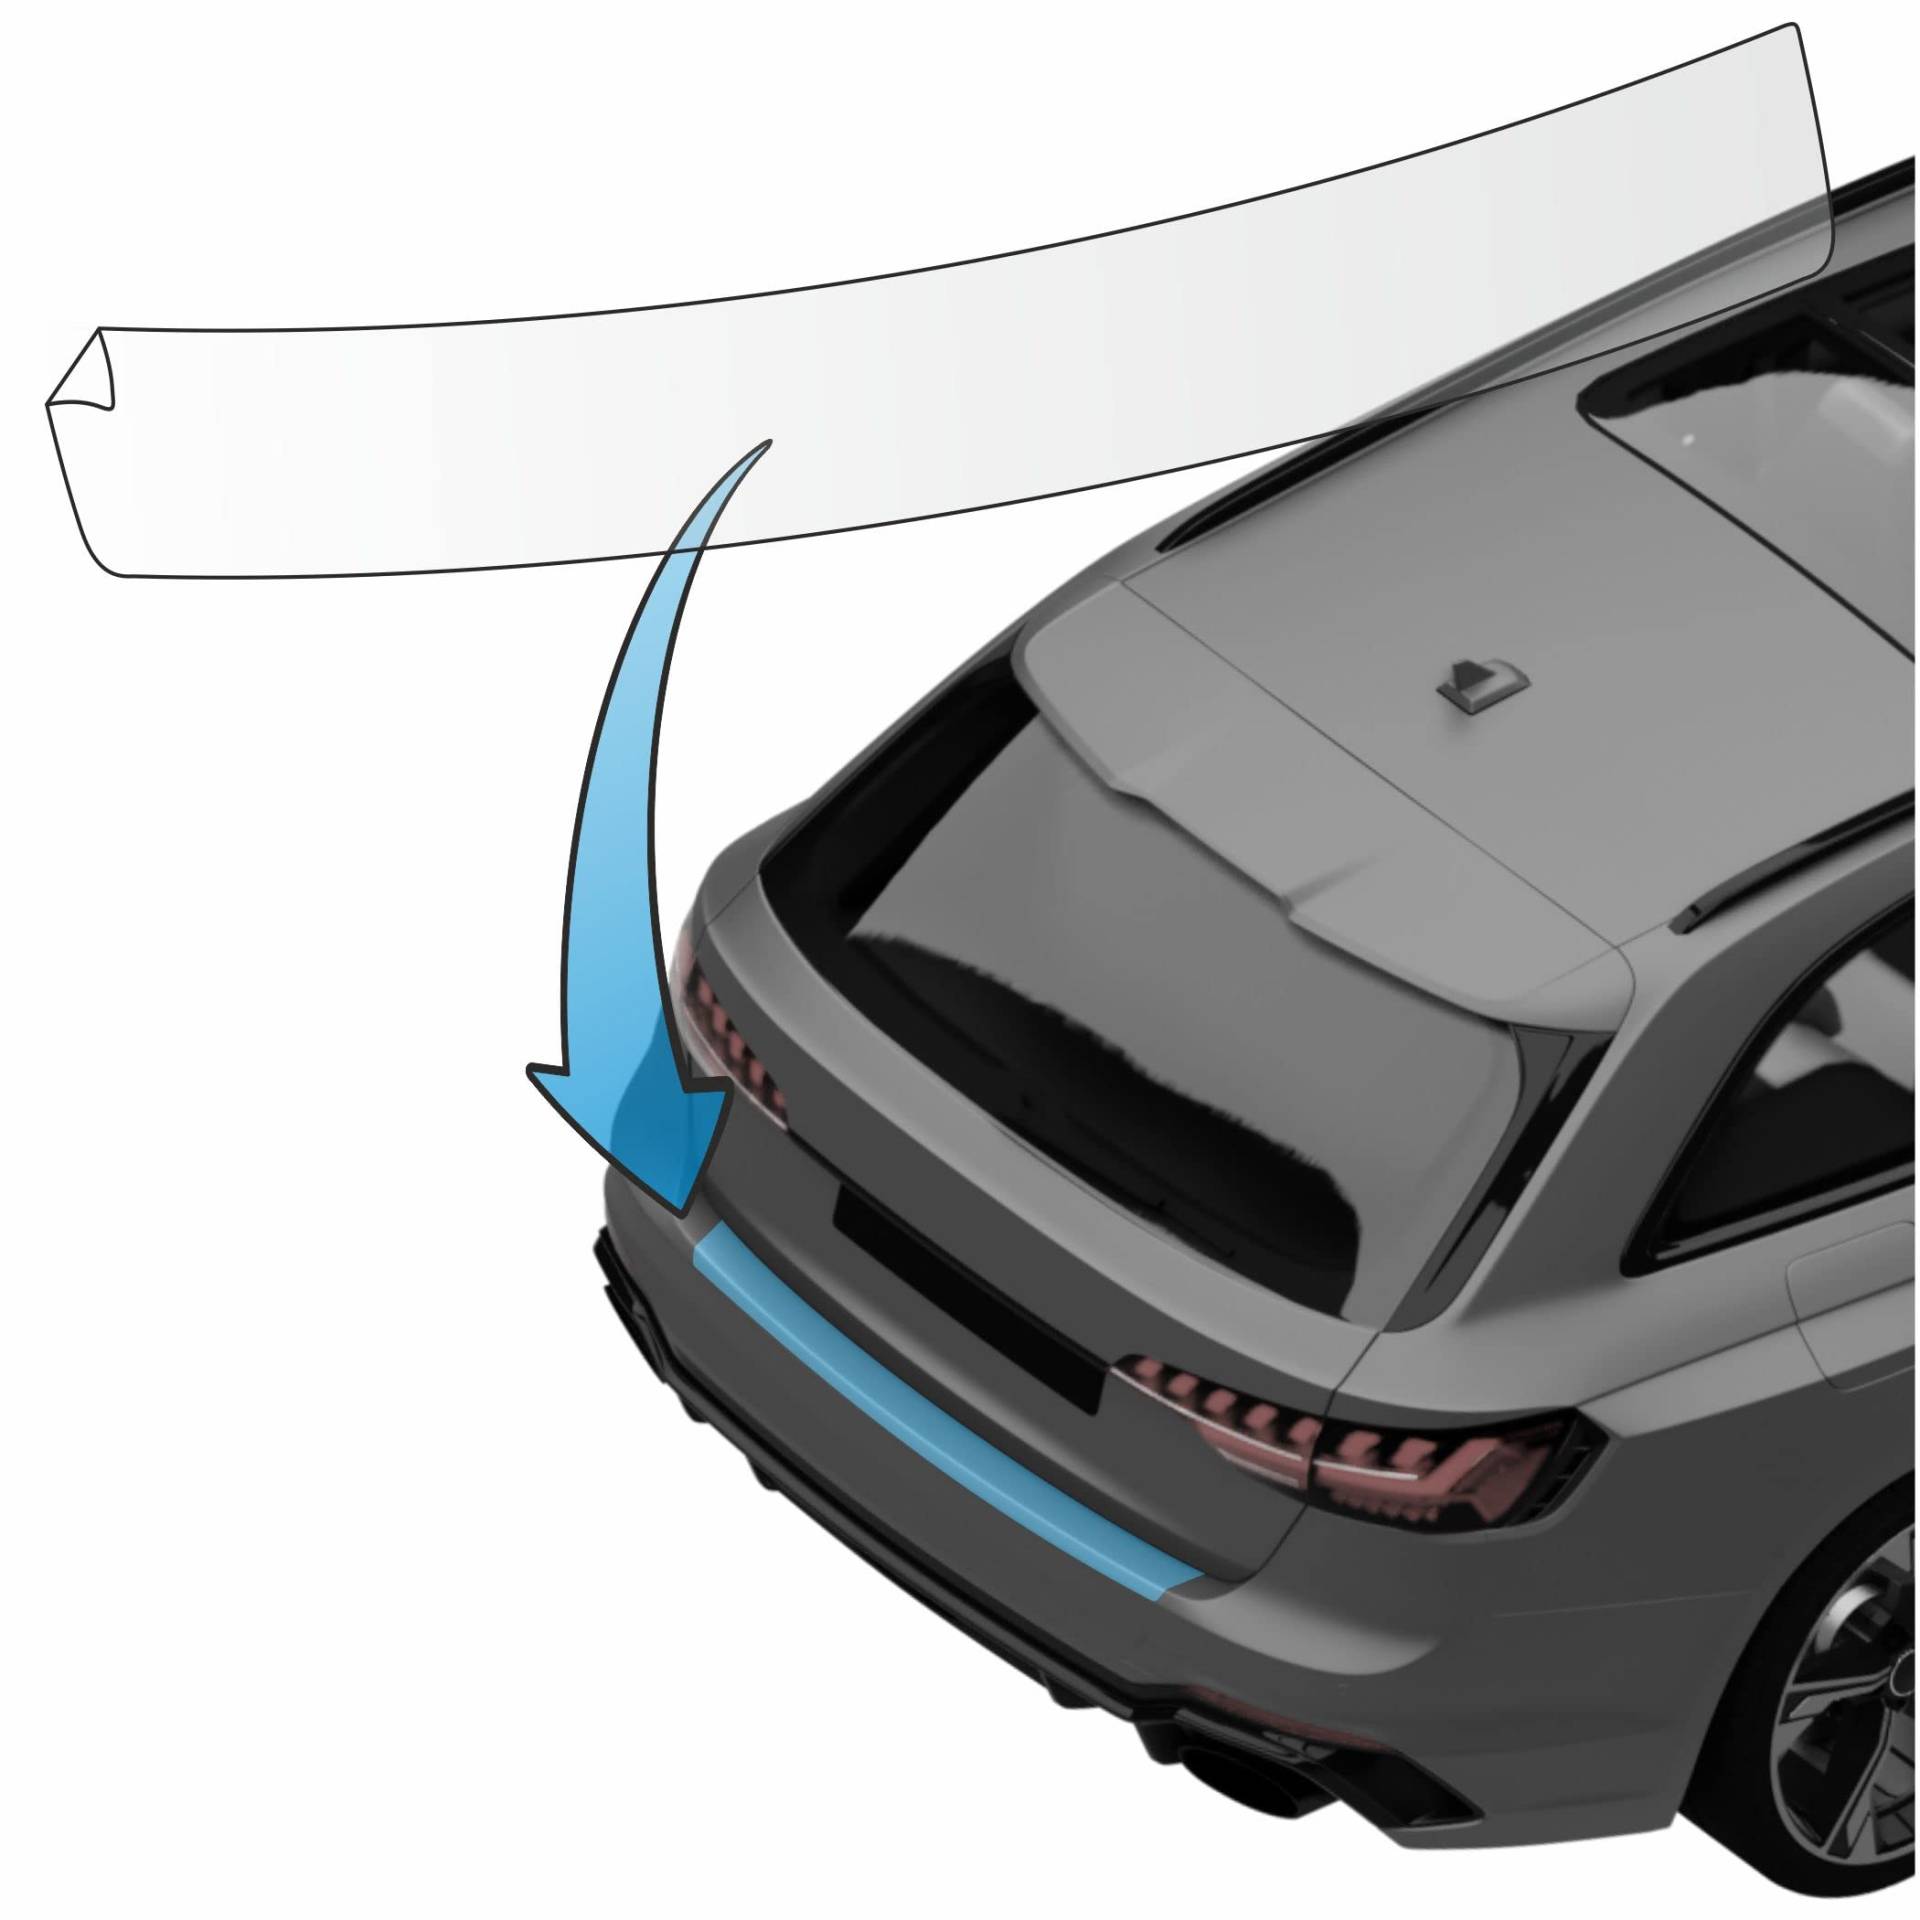 MisterLacky – Lackschutzfolie mit Rakel als Ladekantenschutz Folie passend für BMW 3er Touring (III) Typ G21, ab BJ 03/2019 in transparent (320µm) von Lackschutzshop